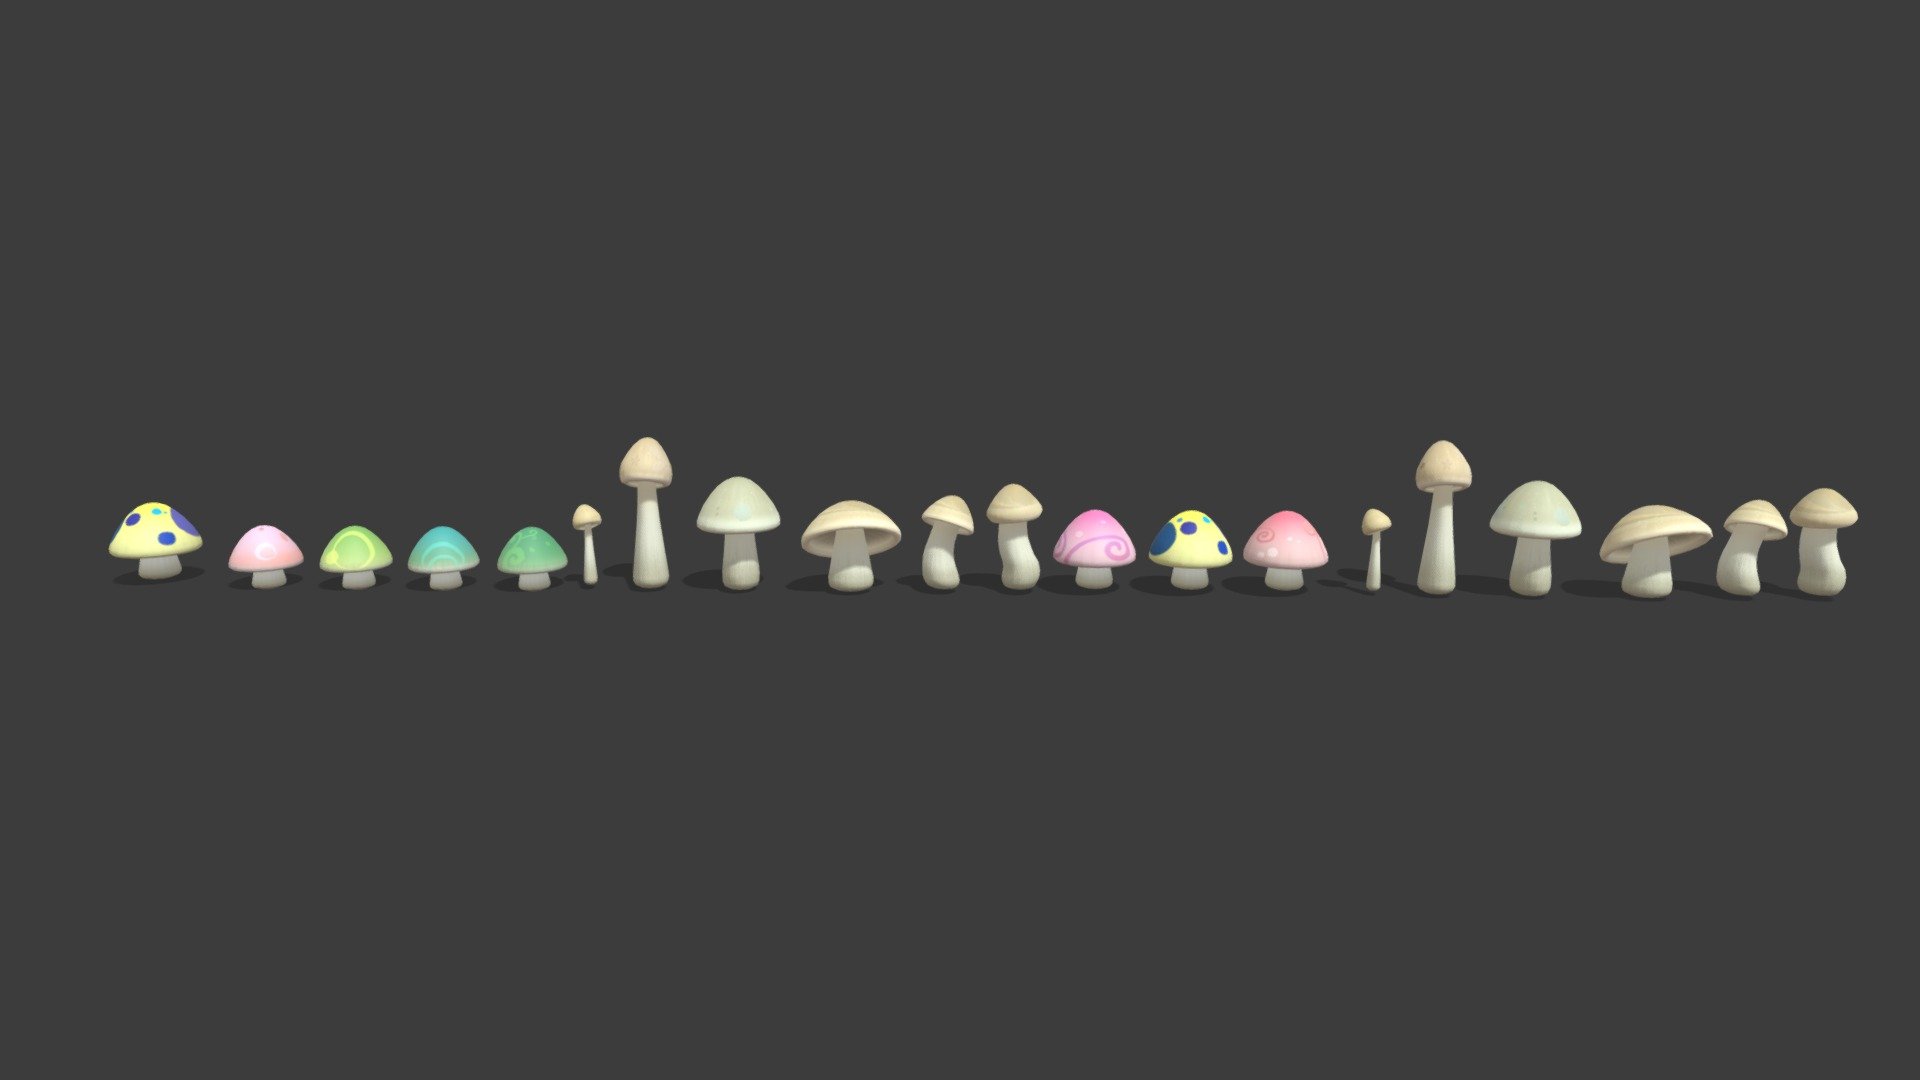 Mushroom - Buy Royalty Free 3D model by gohean33 3d model